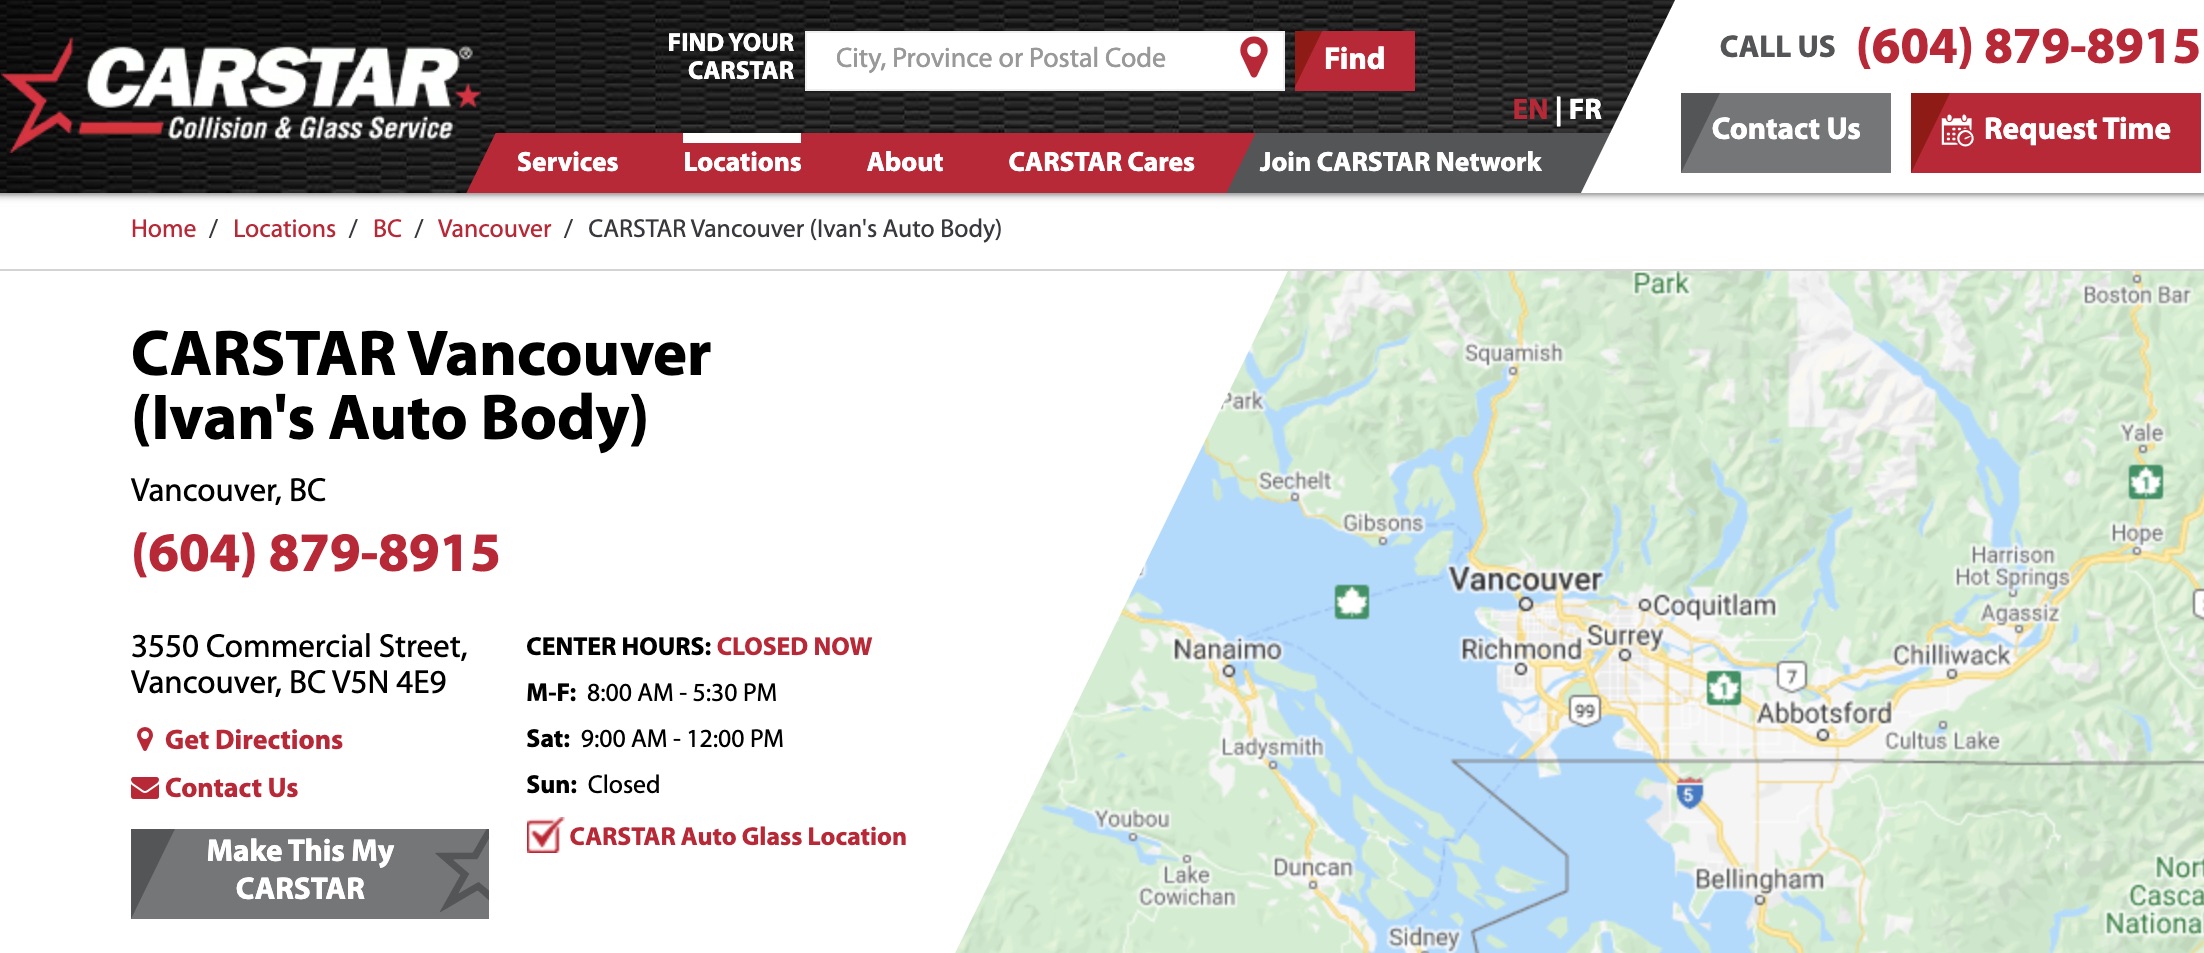 CARSTAR Vancouver - Ivan's Auto Body